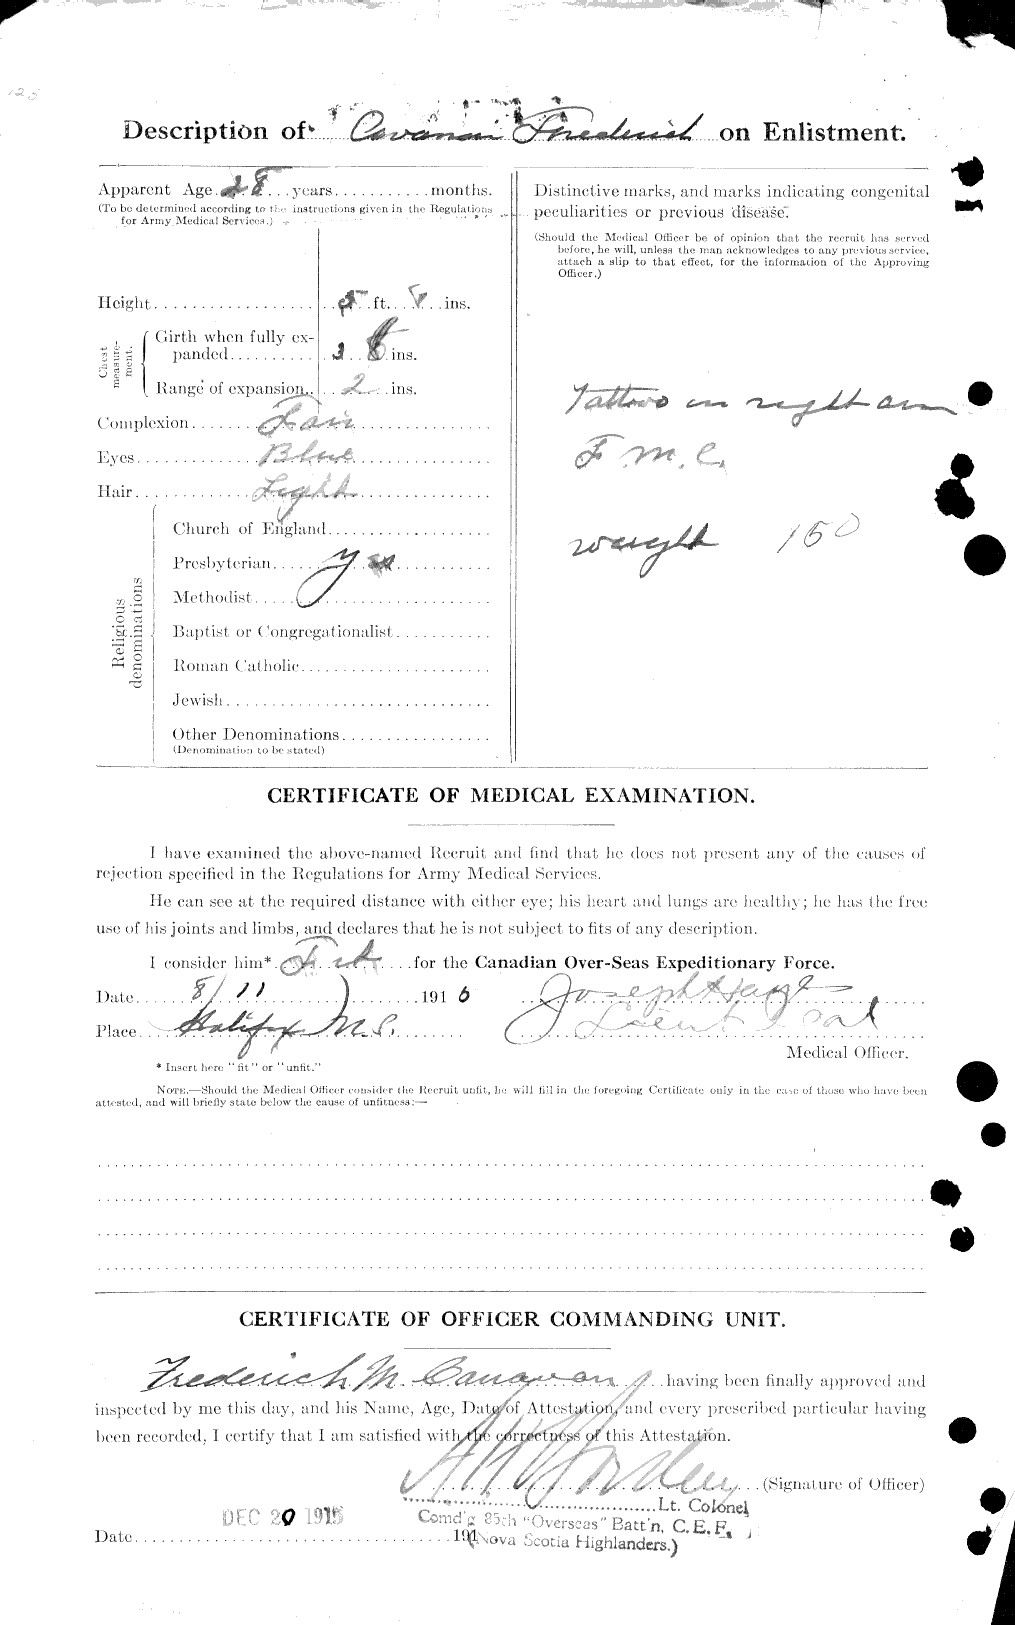 Dossiers du Personnel de la Première Guerre mondiale - CEC 008853b